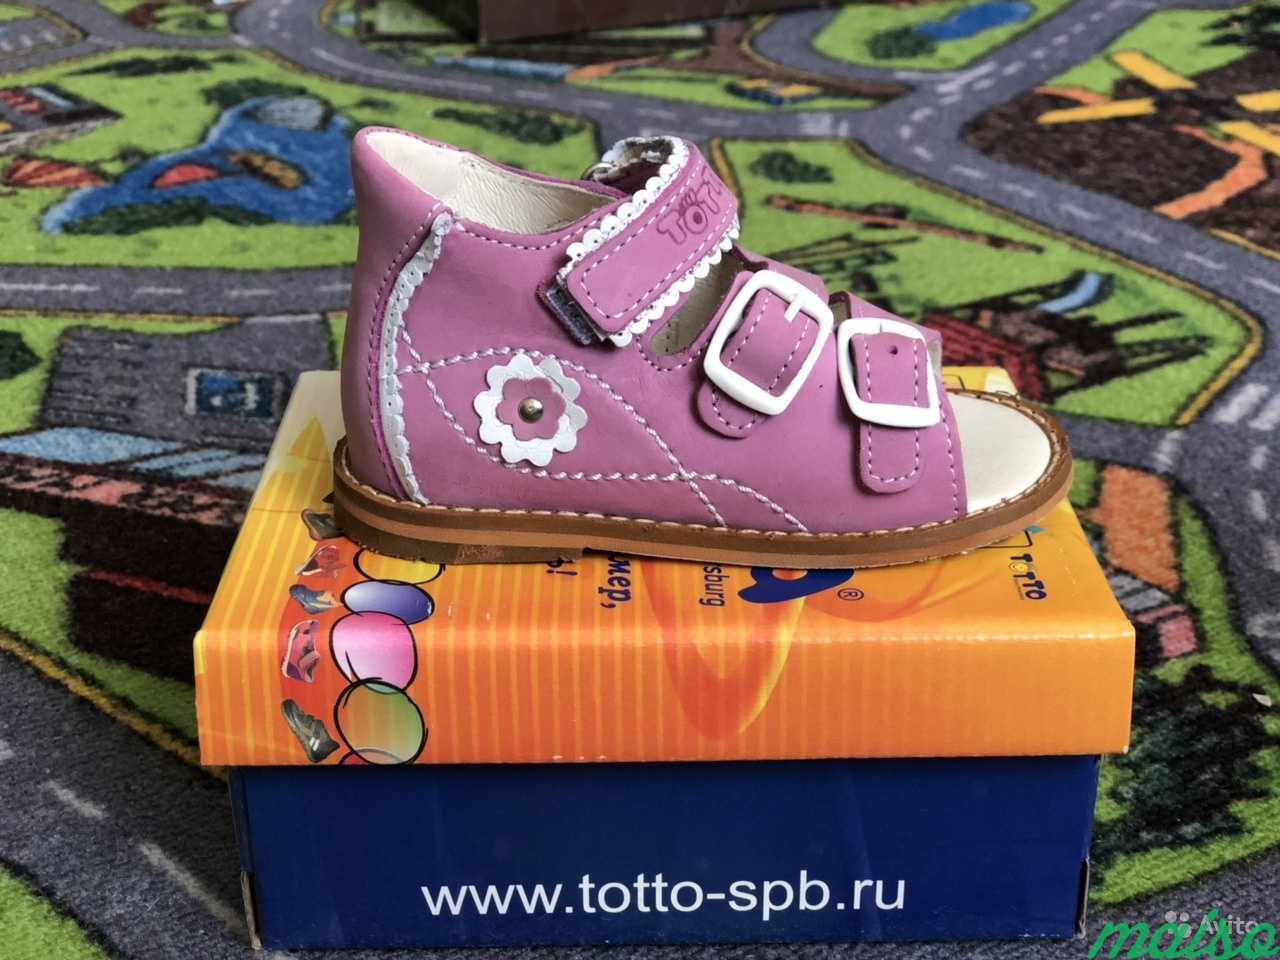 Детская обувь под реализацию в Москве. Фото 1